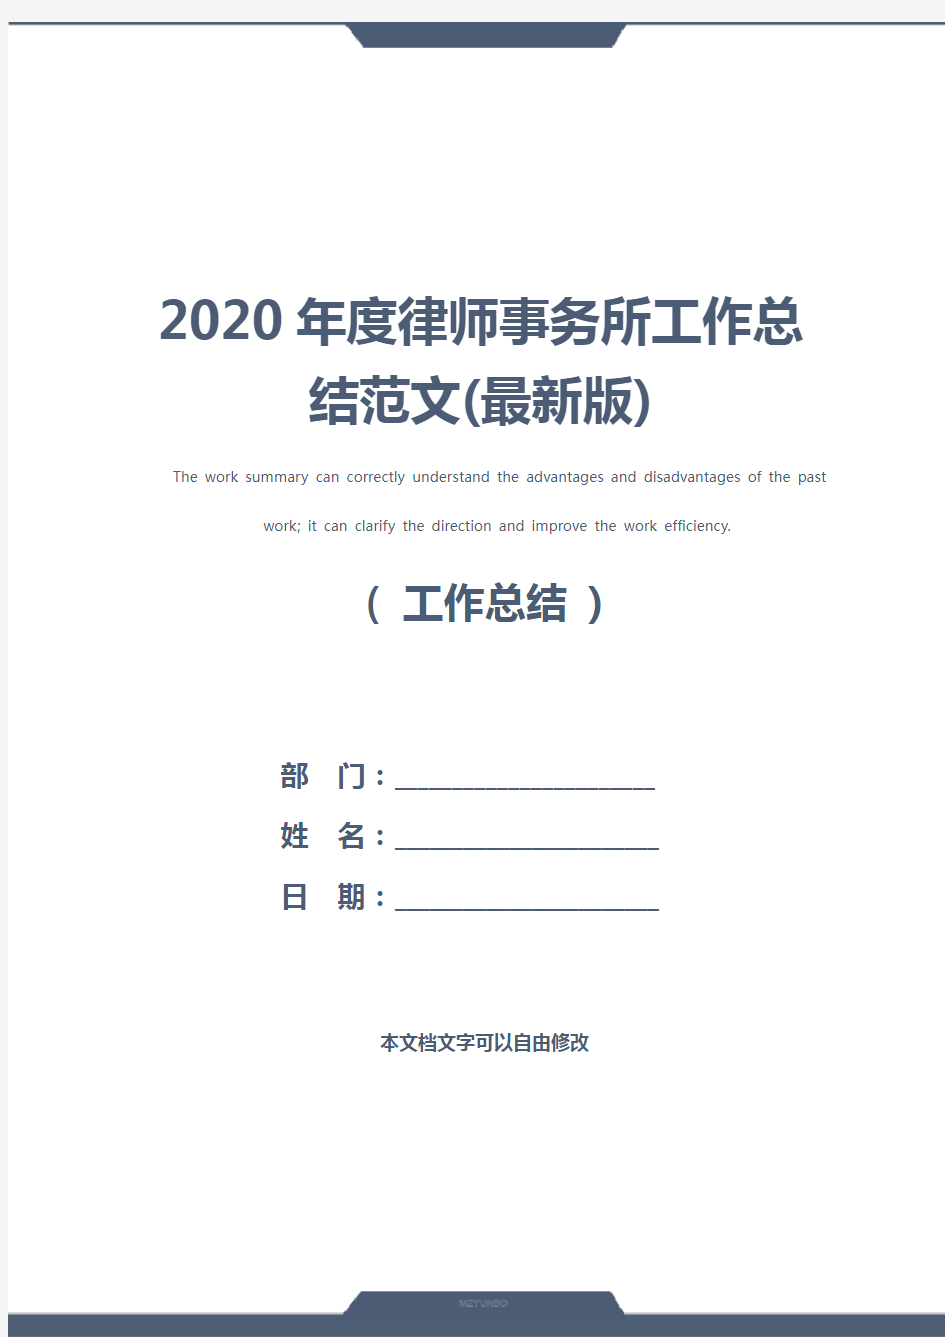 2020年度律师事务所工作总结范文(最新版)